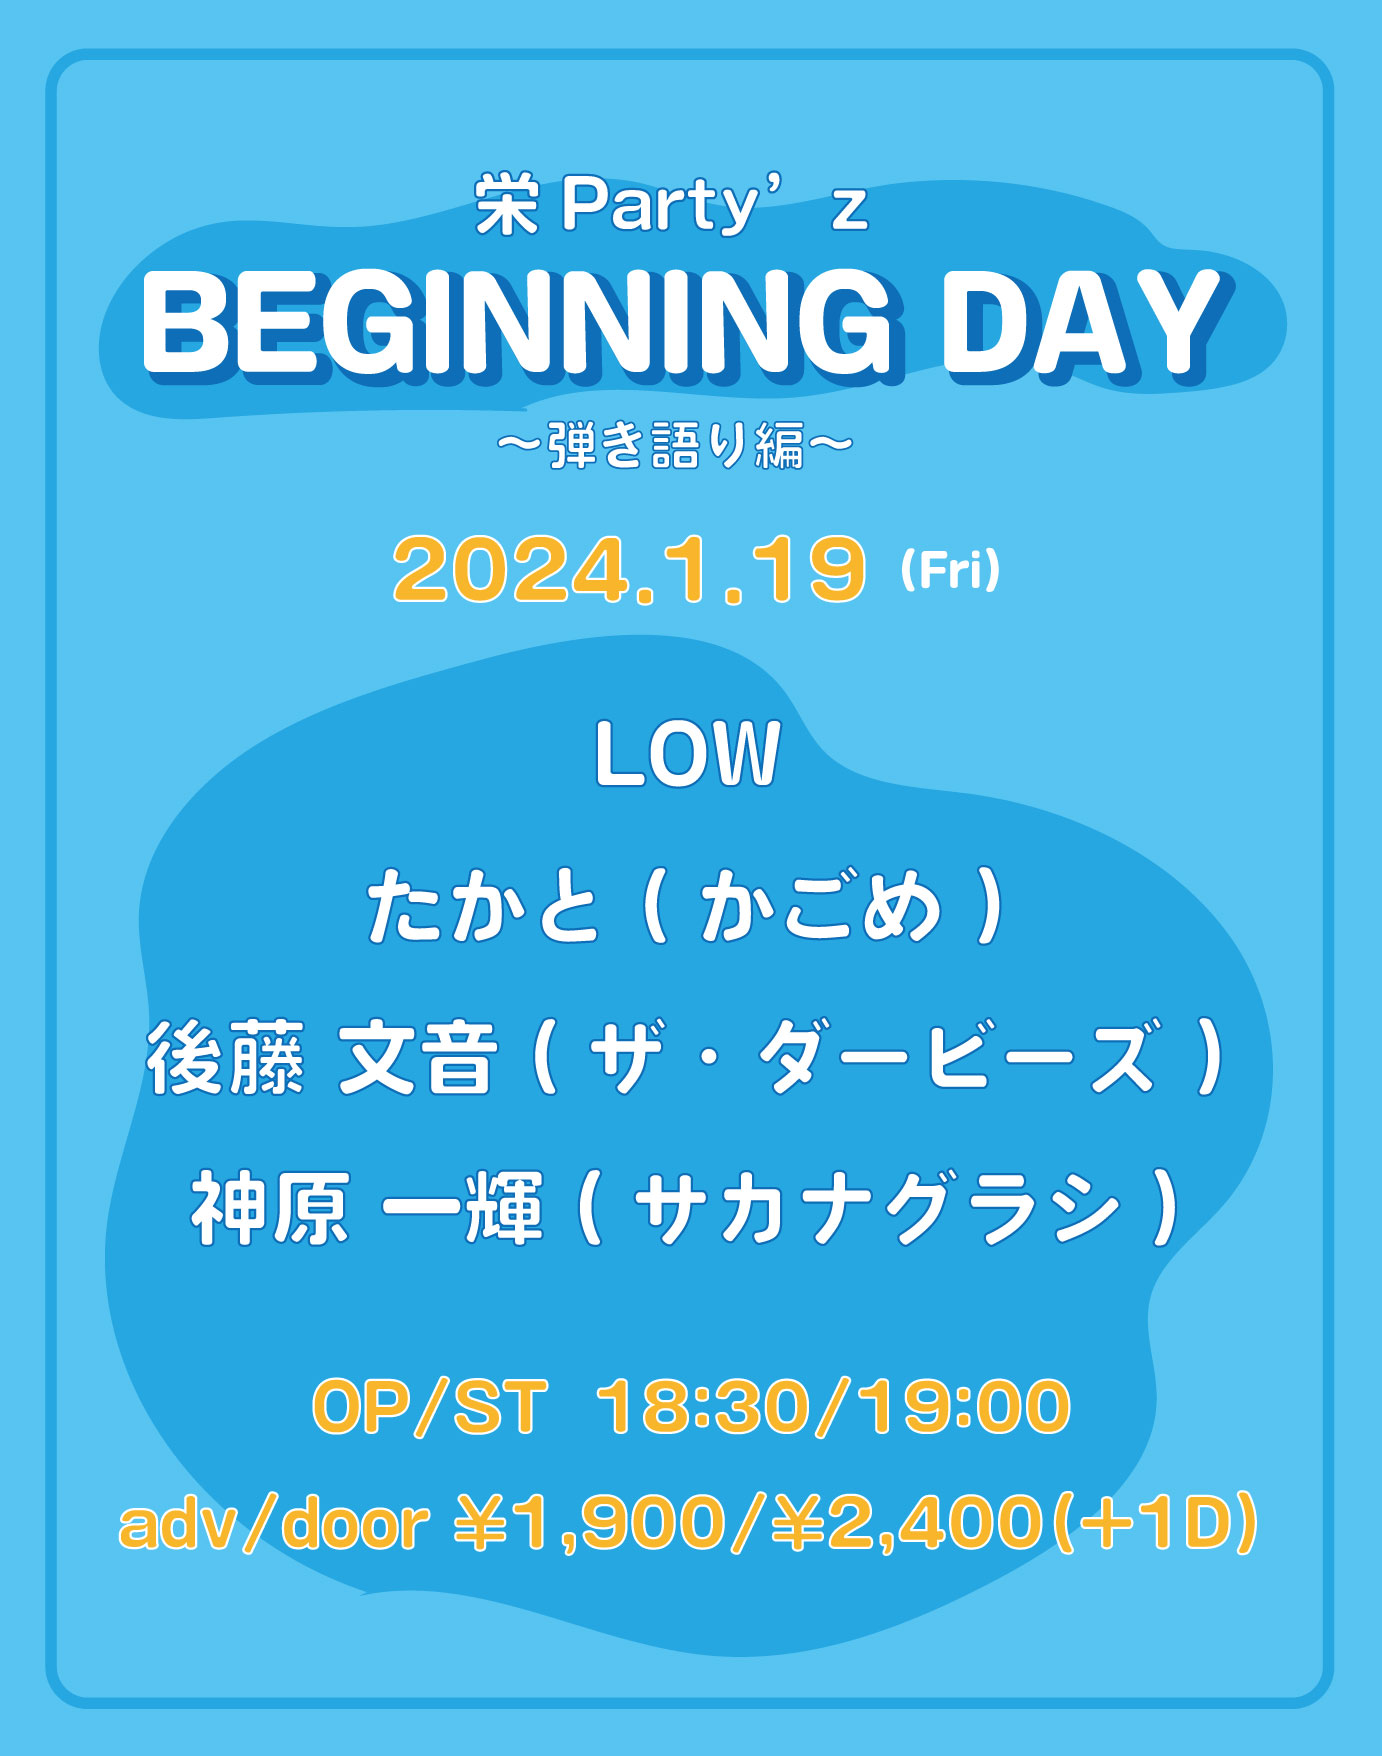 BEGINNING DAY ~弾き語り~